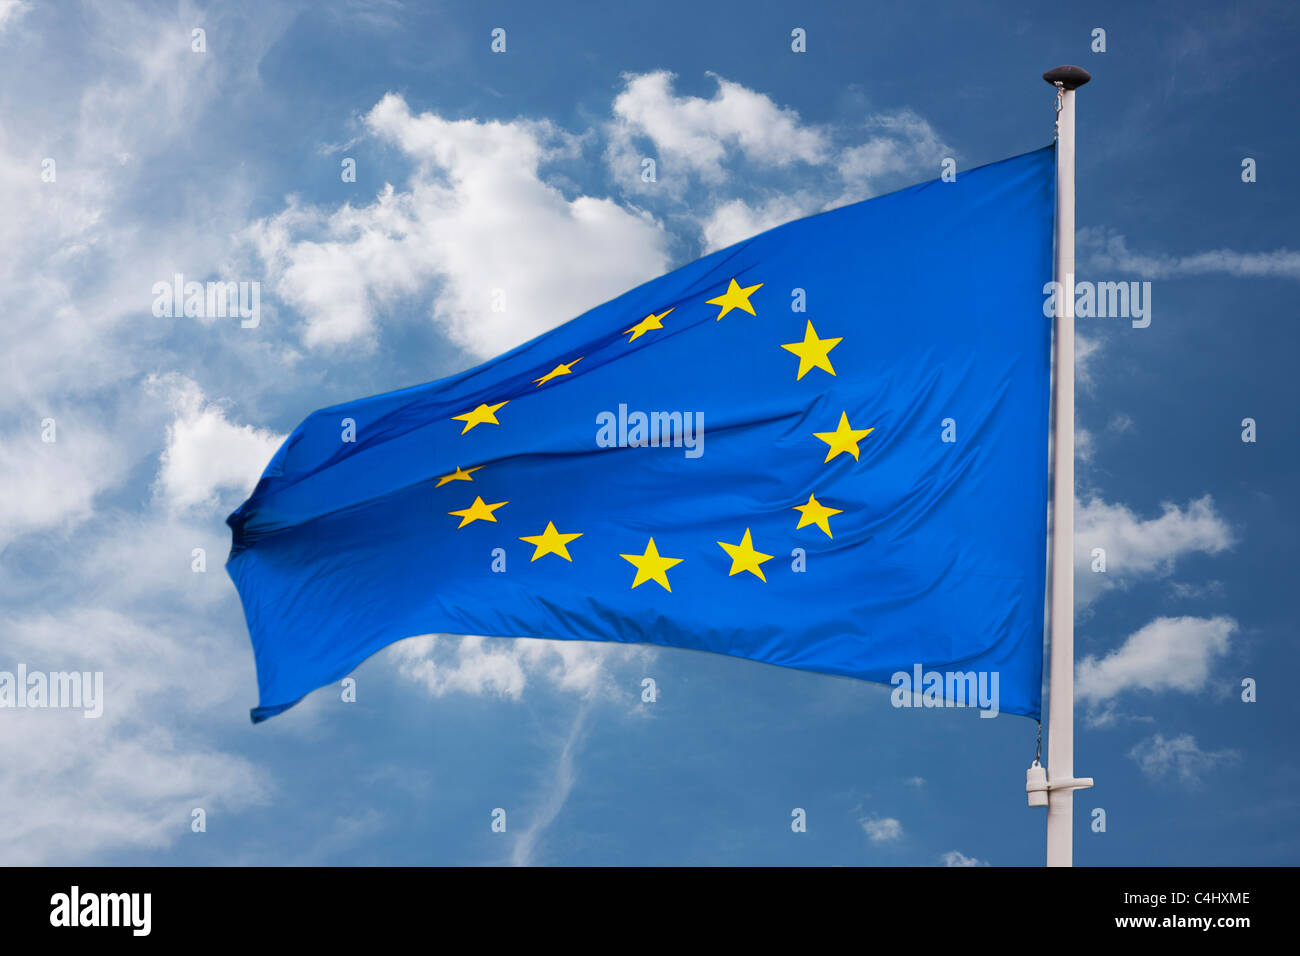 Detailansicht einer Flagge der Europäischen Union | Dettaglio Foto di bandiera dell'Unione europea Foto Stock